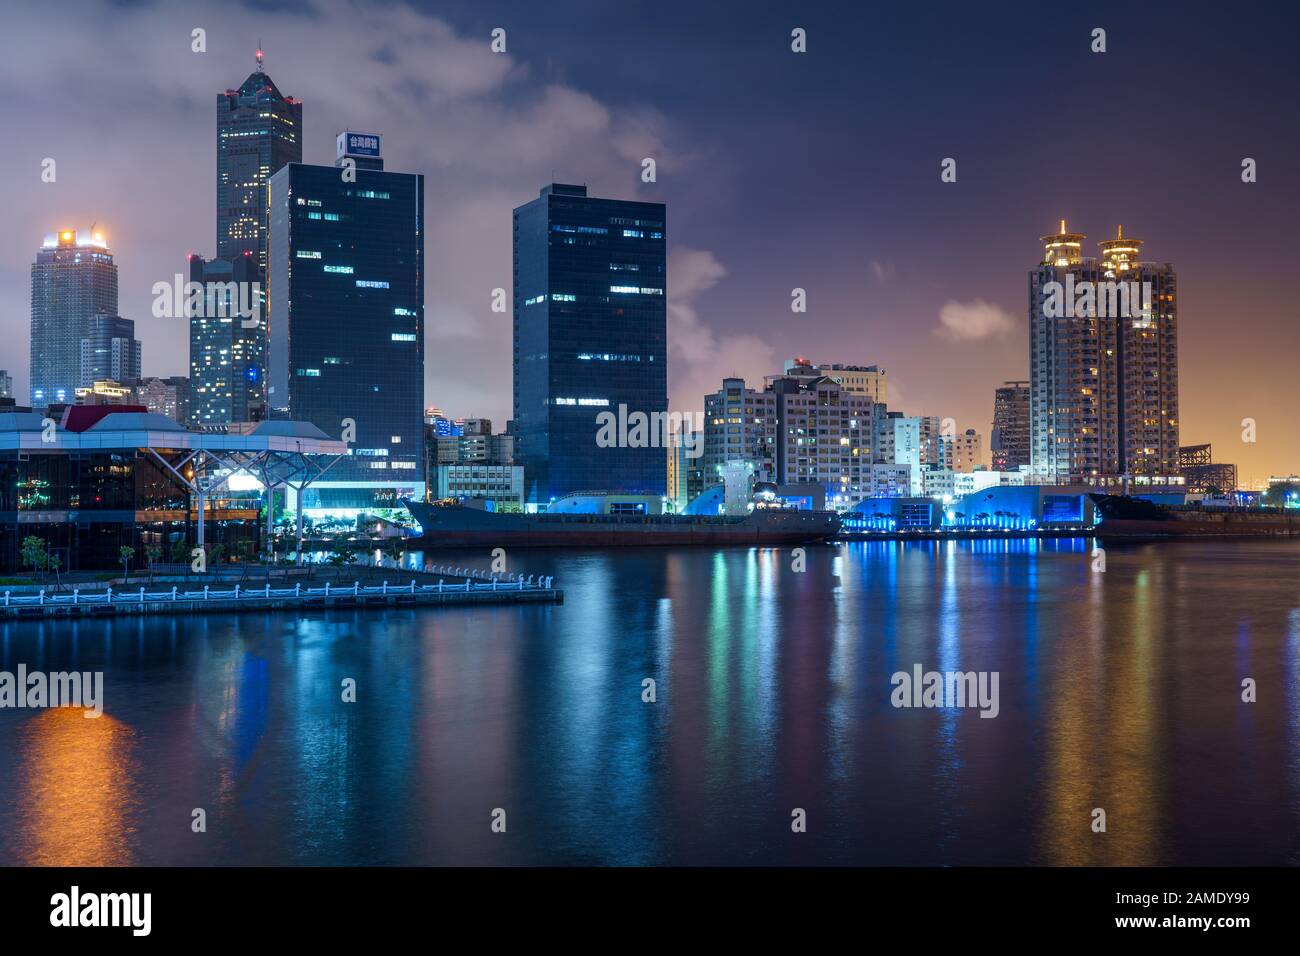 Le luci della città e lo skyline della moderna città taiwanese Kaohsiung si riflettono in acqua di notte Foto Stock